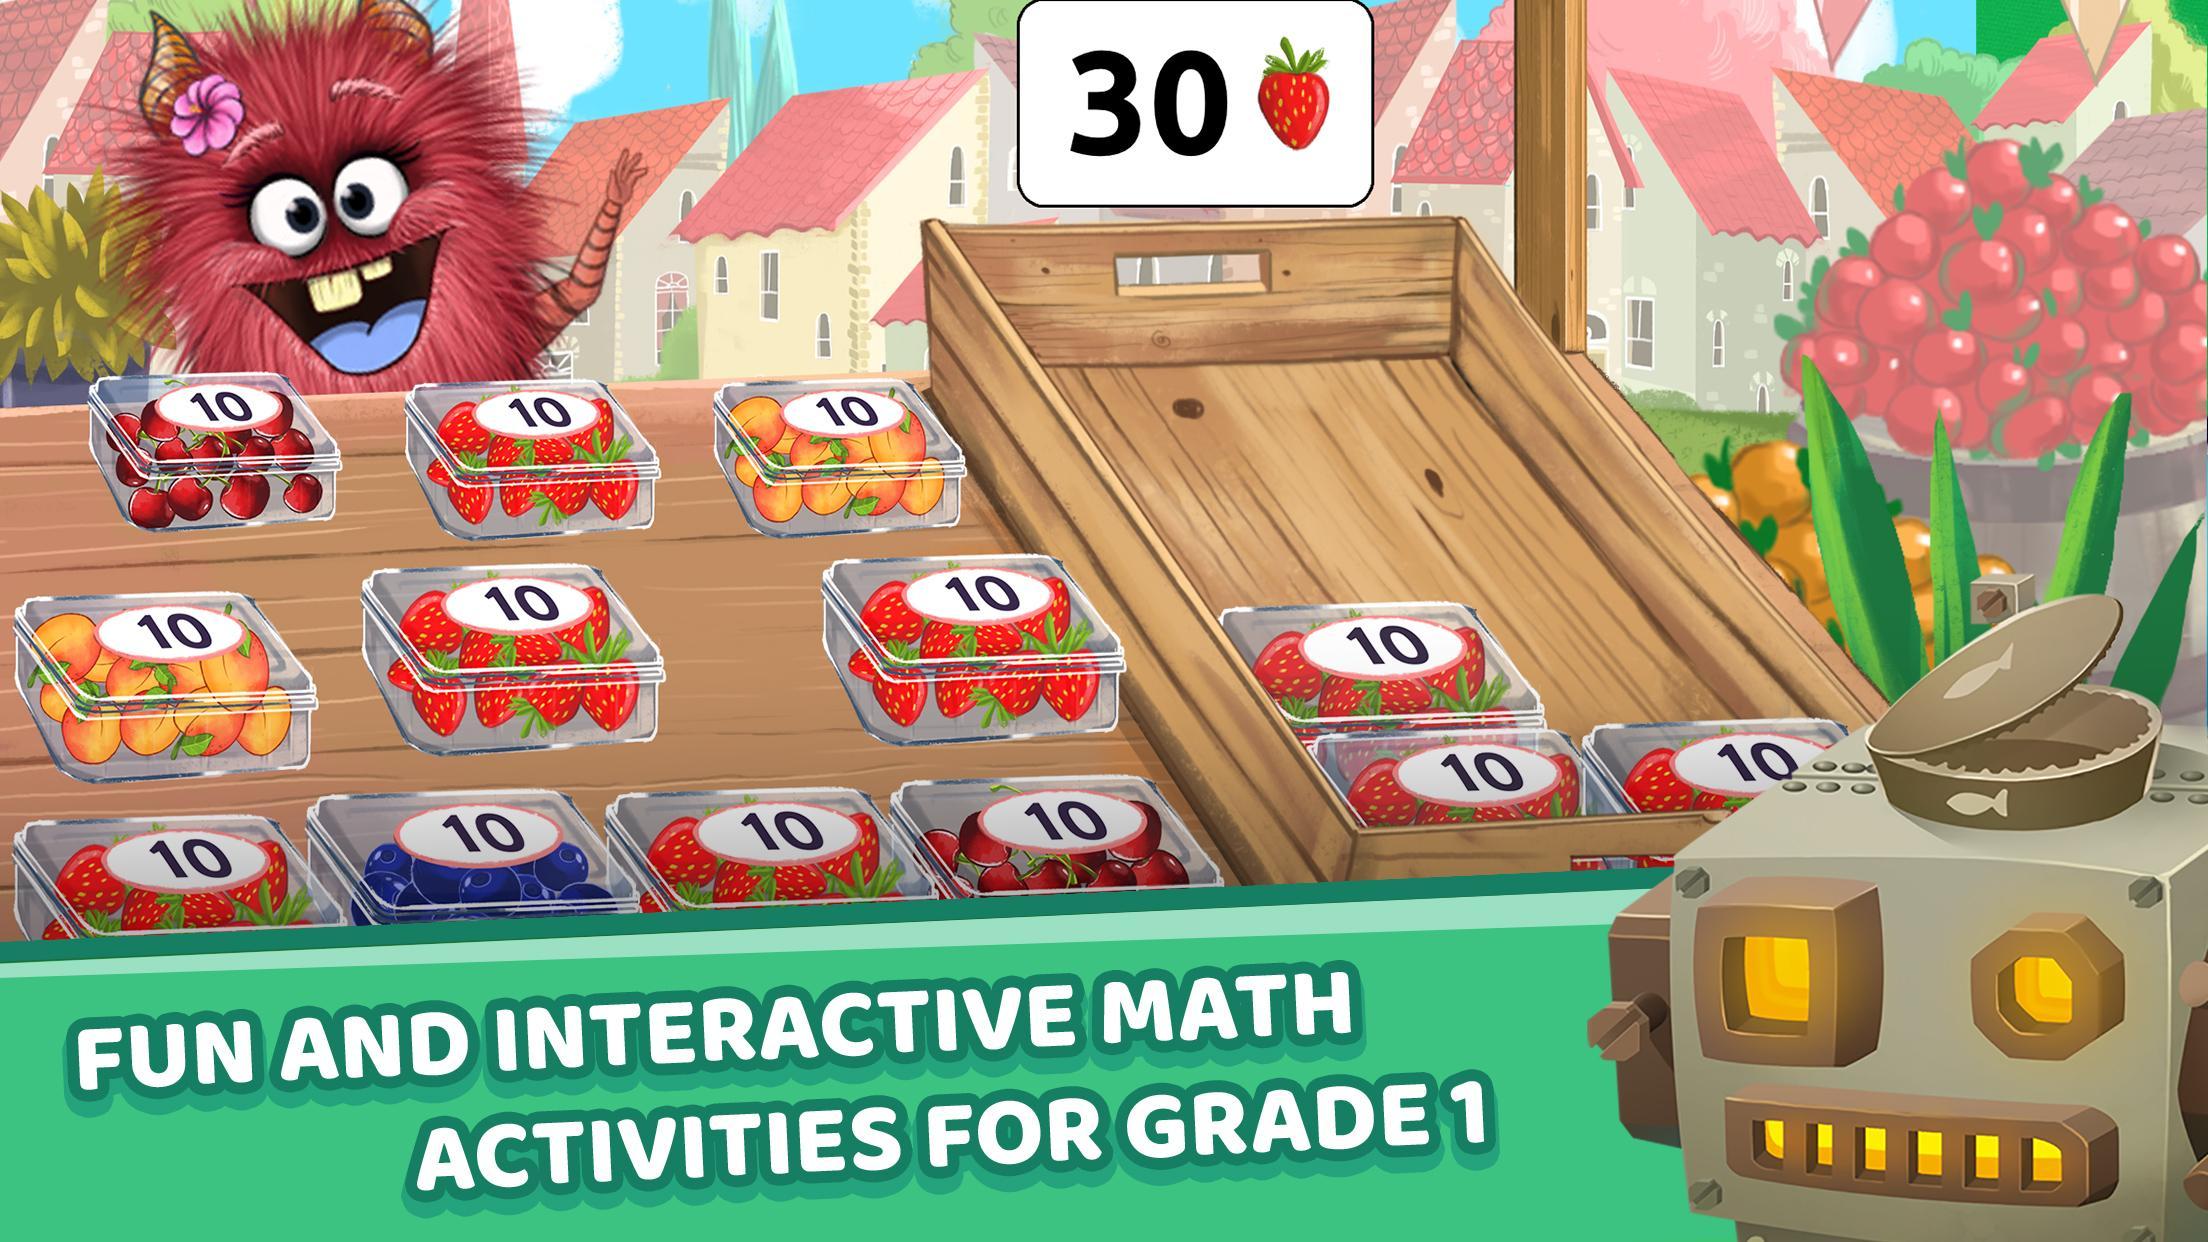 Matific Galaxy - Maths Games for 1st Graders 2.2.2 Screenshot 3